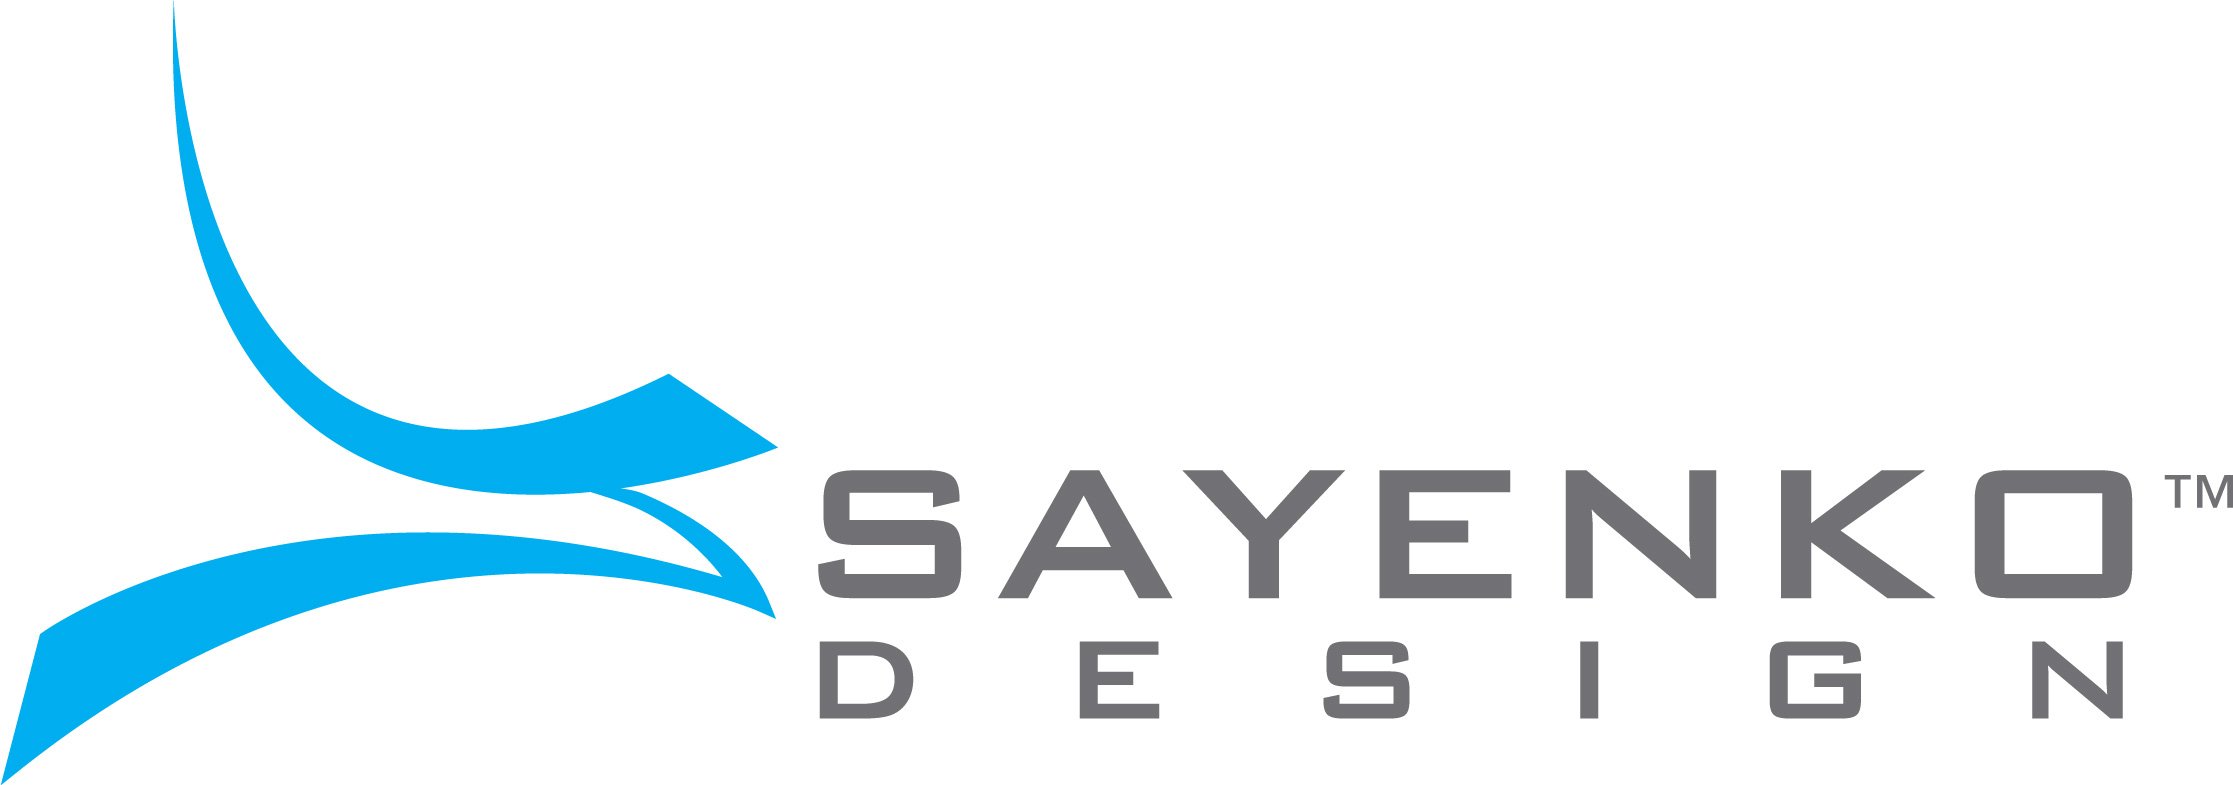 Best Web Design Agency Logo: Sayenko Design